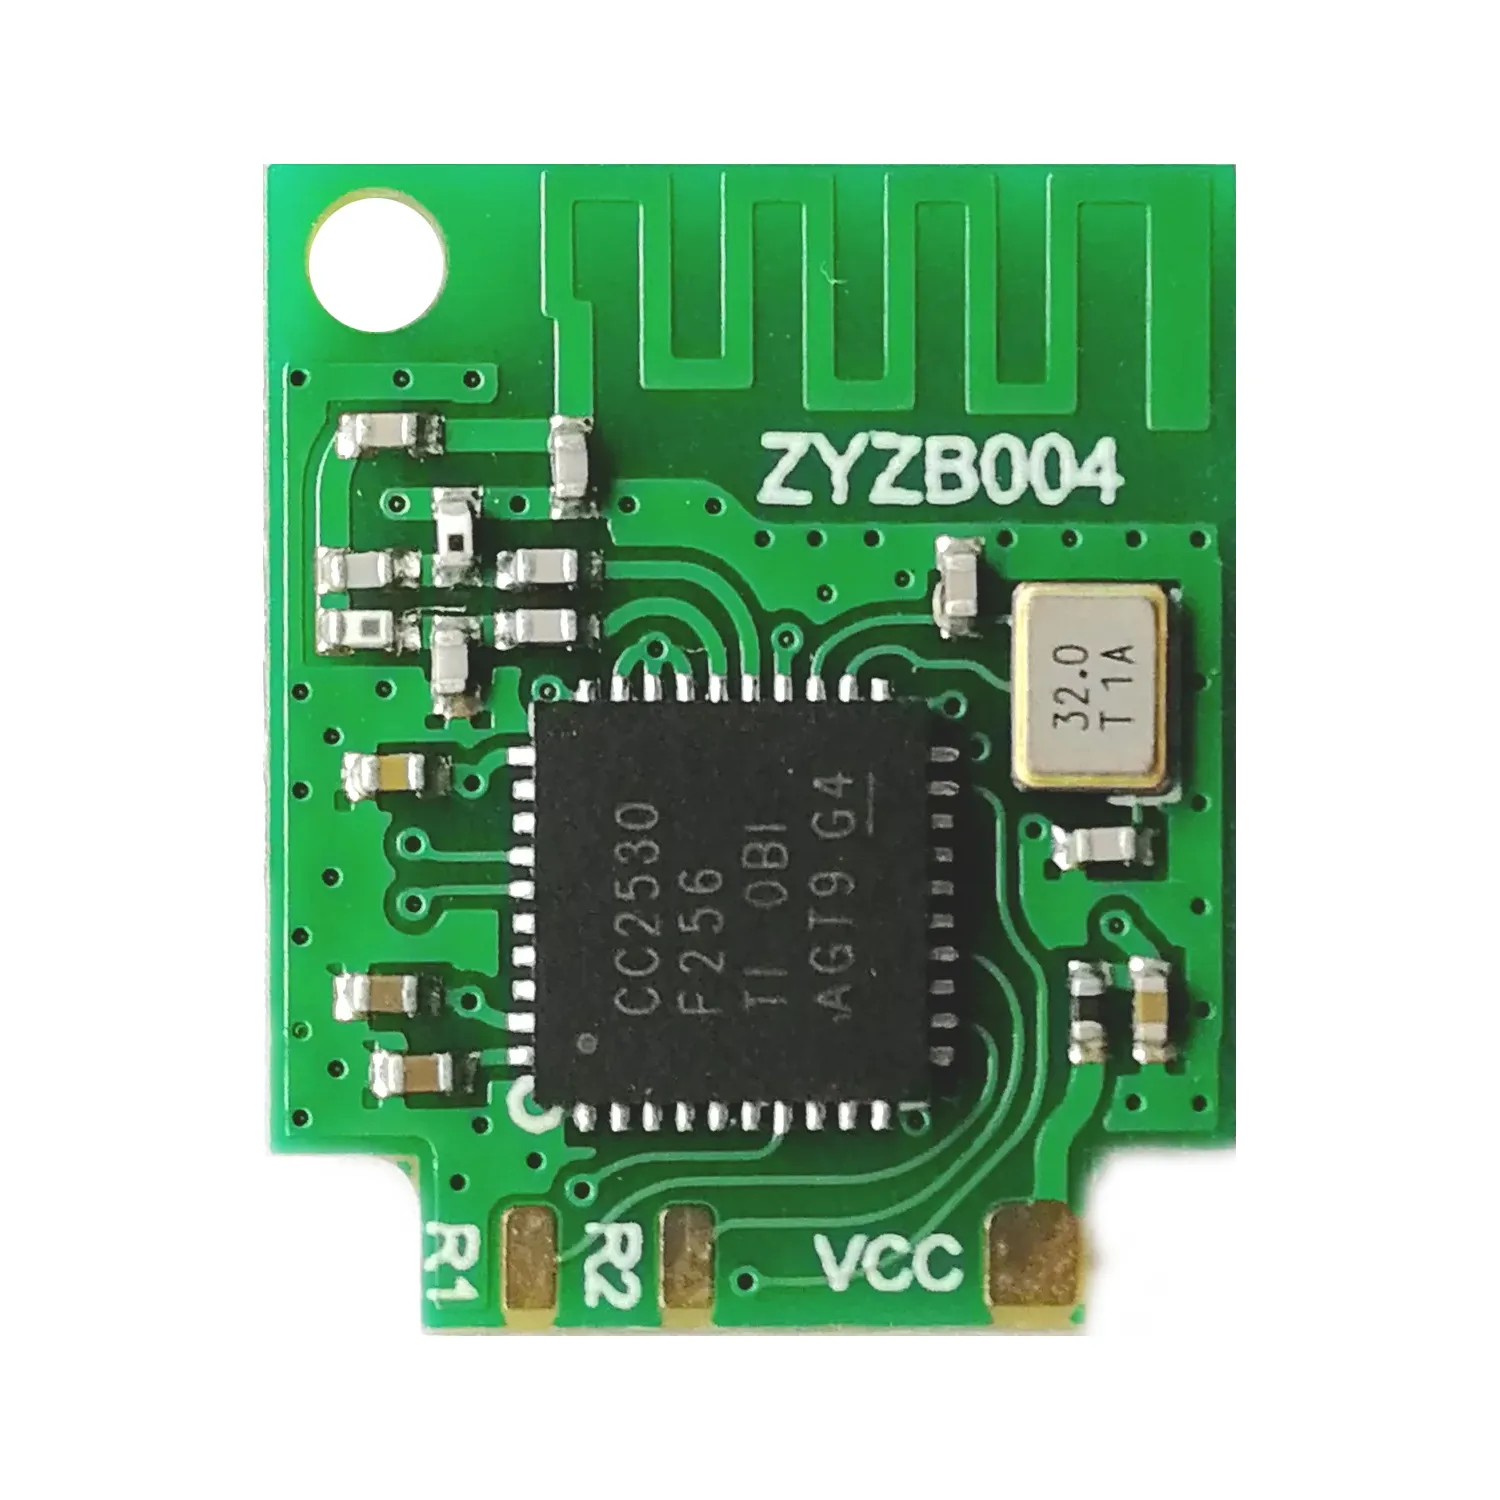 ZYZB004-plug